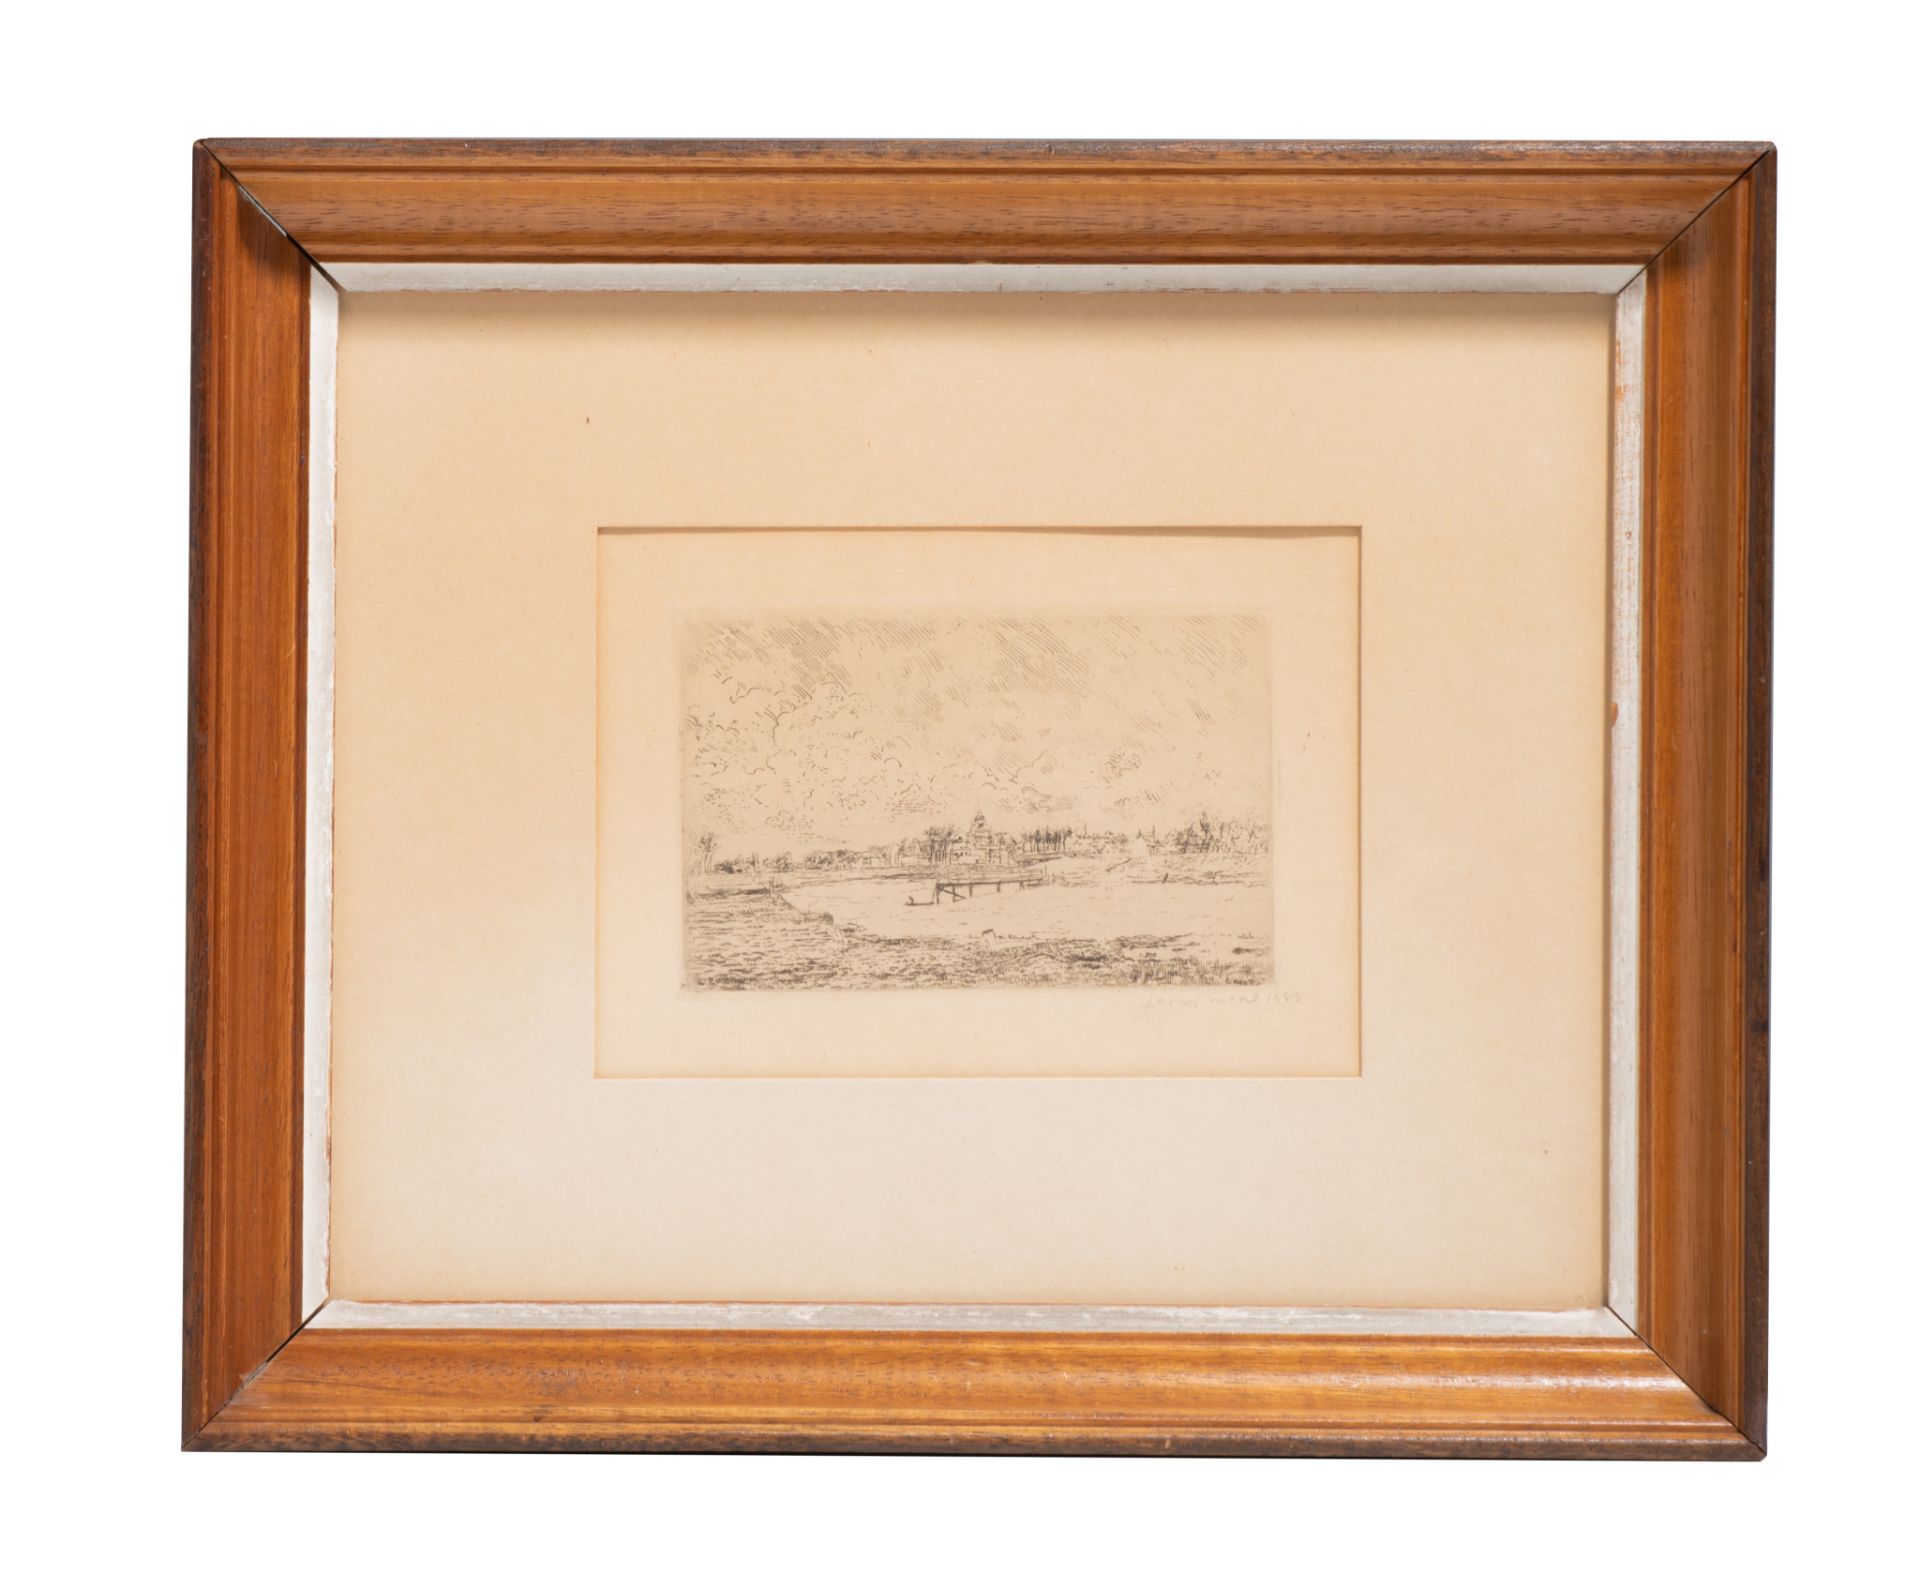 James Ensor (1860-1949), 'Vue de Nieuport' (View of Nieuport), 1888, echting on simili japon, 85 x 1 - Bild 2 aus 3